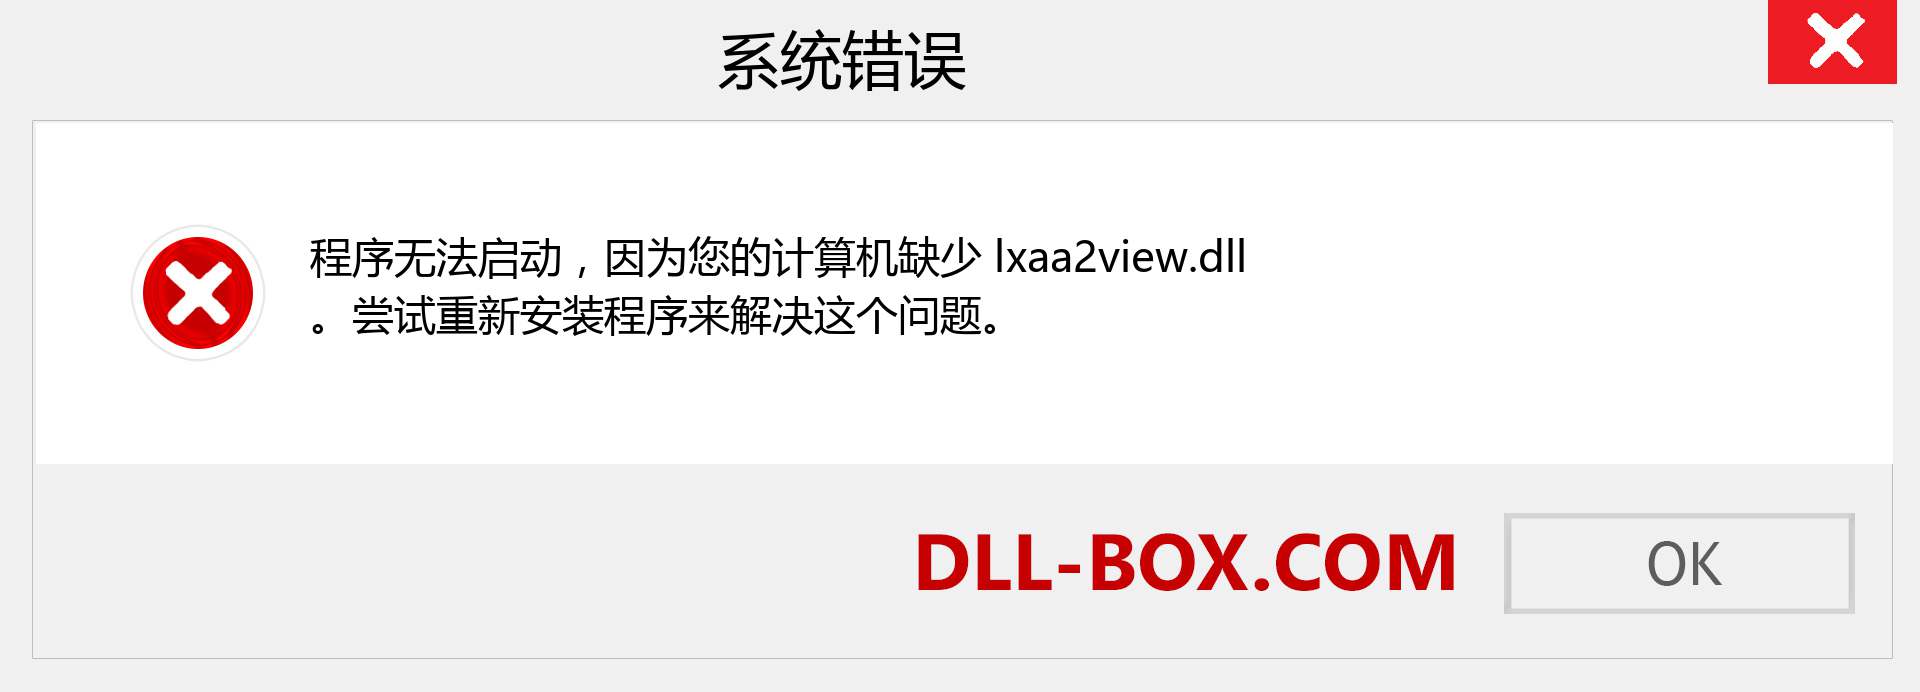 lxaa2view.dll 文件丢失？。 适用于 Windows 7、8、10 的下载 - 修复 Windows、照片、图像上的 lxaa2view dll 丢失错误